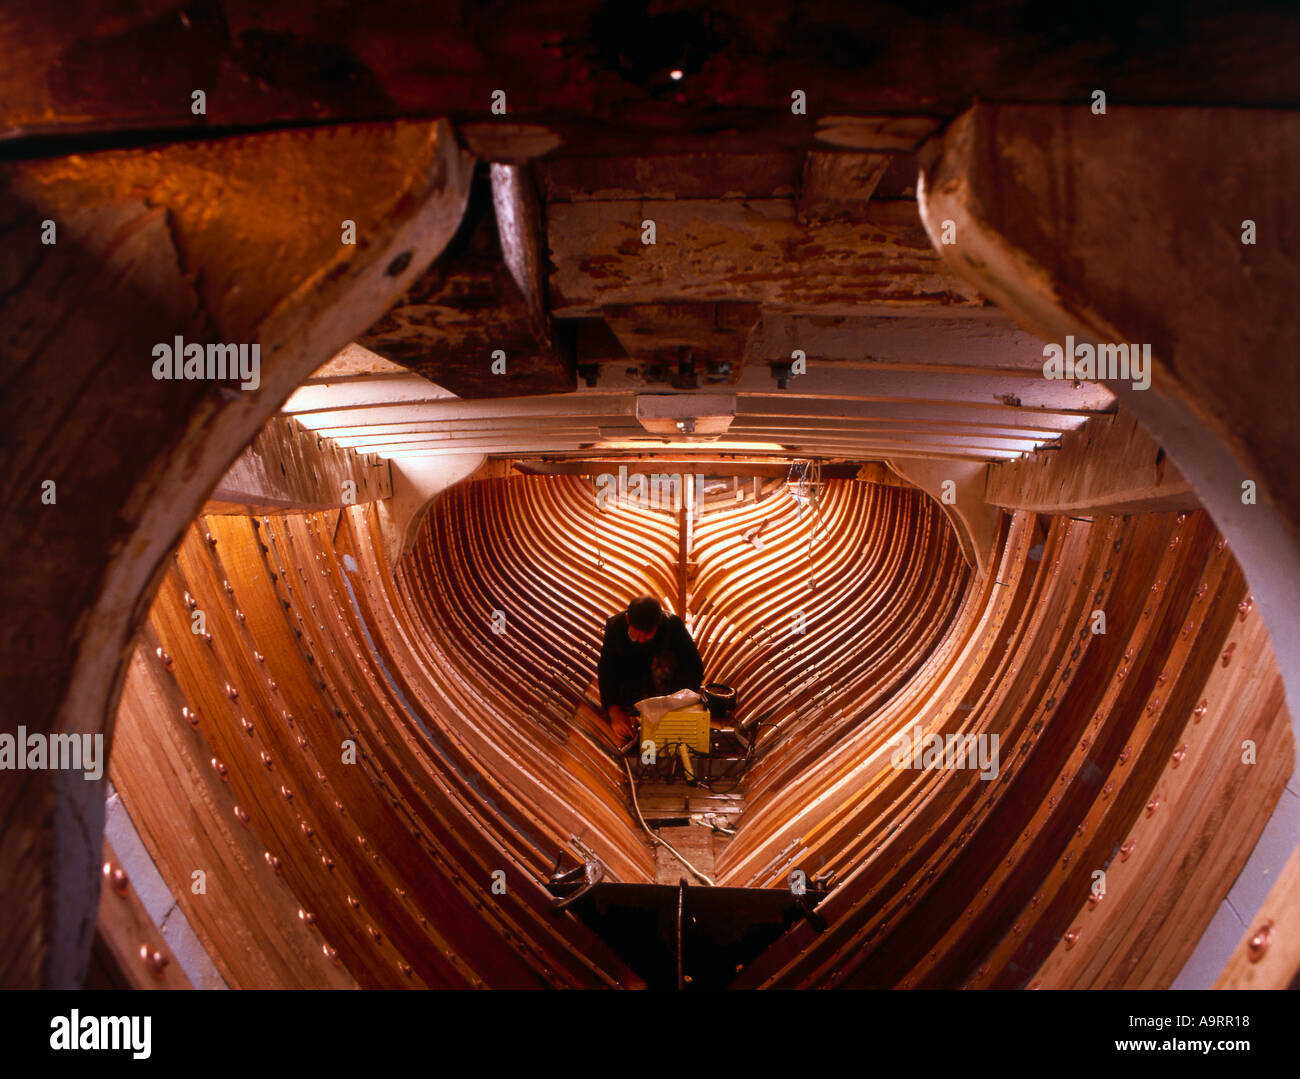 Restoring interior of wooden boat Elvira Stock Photo